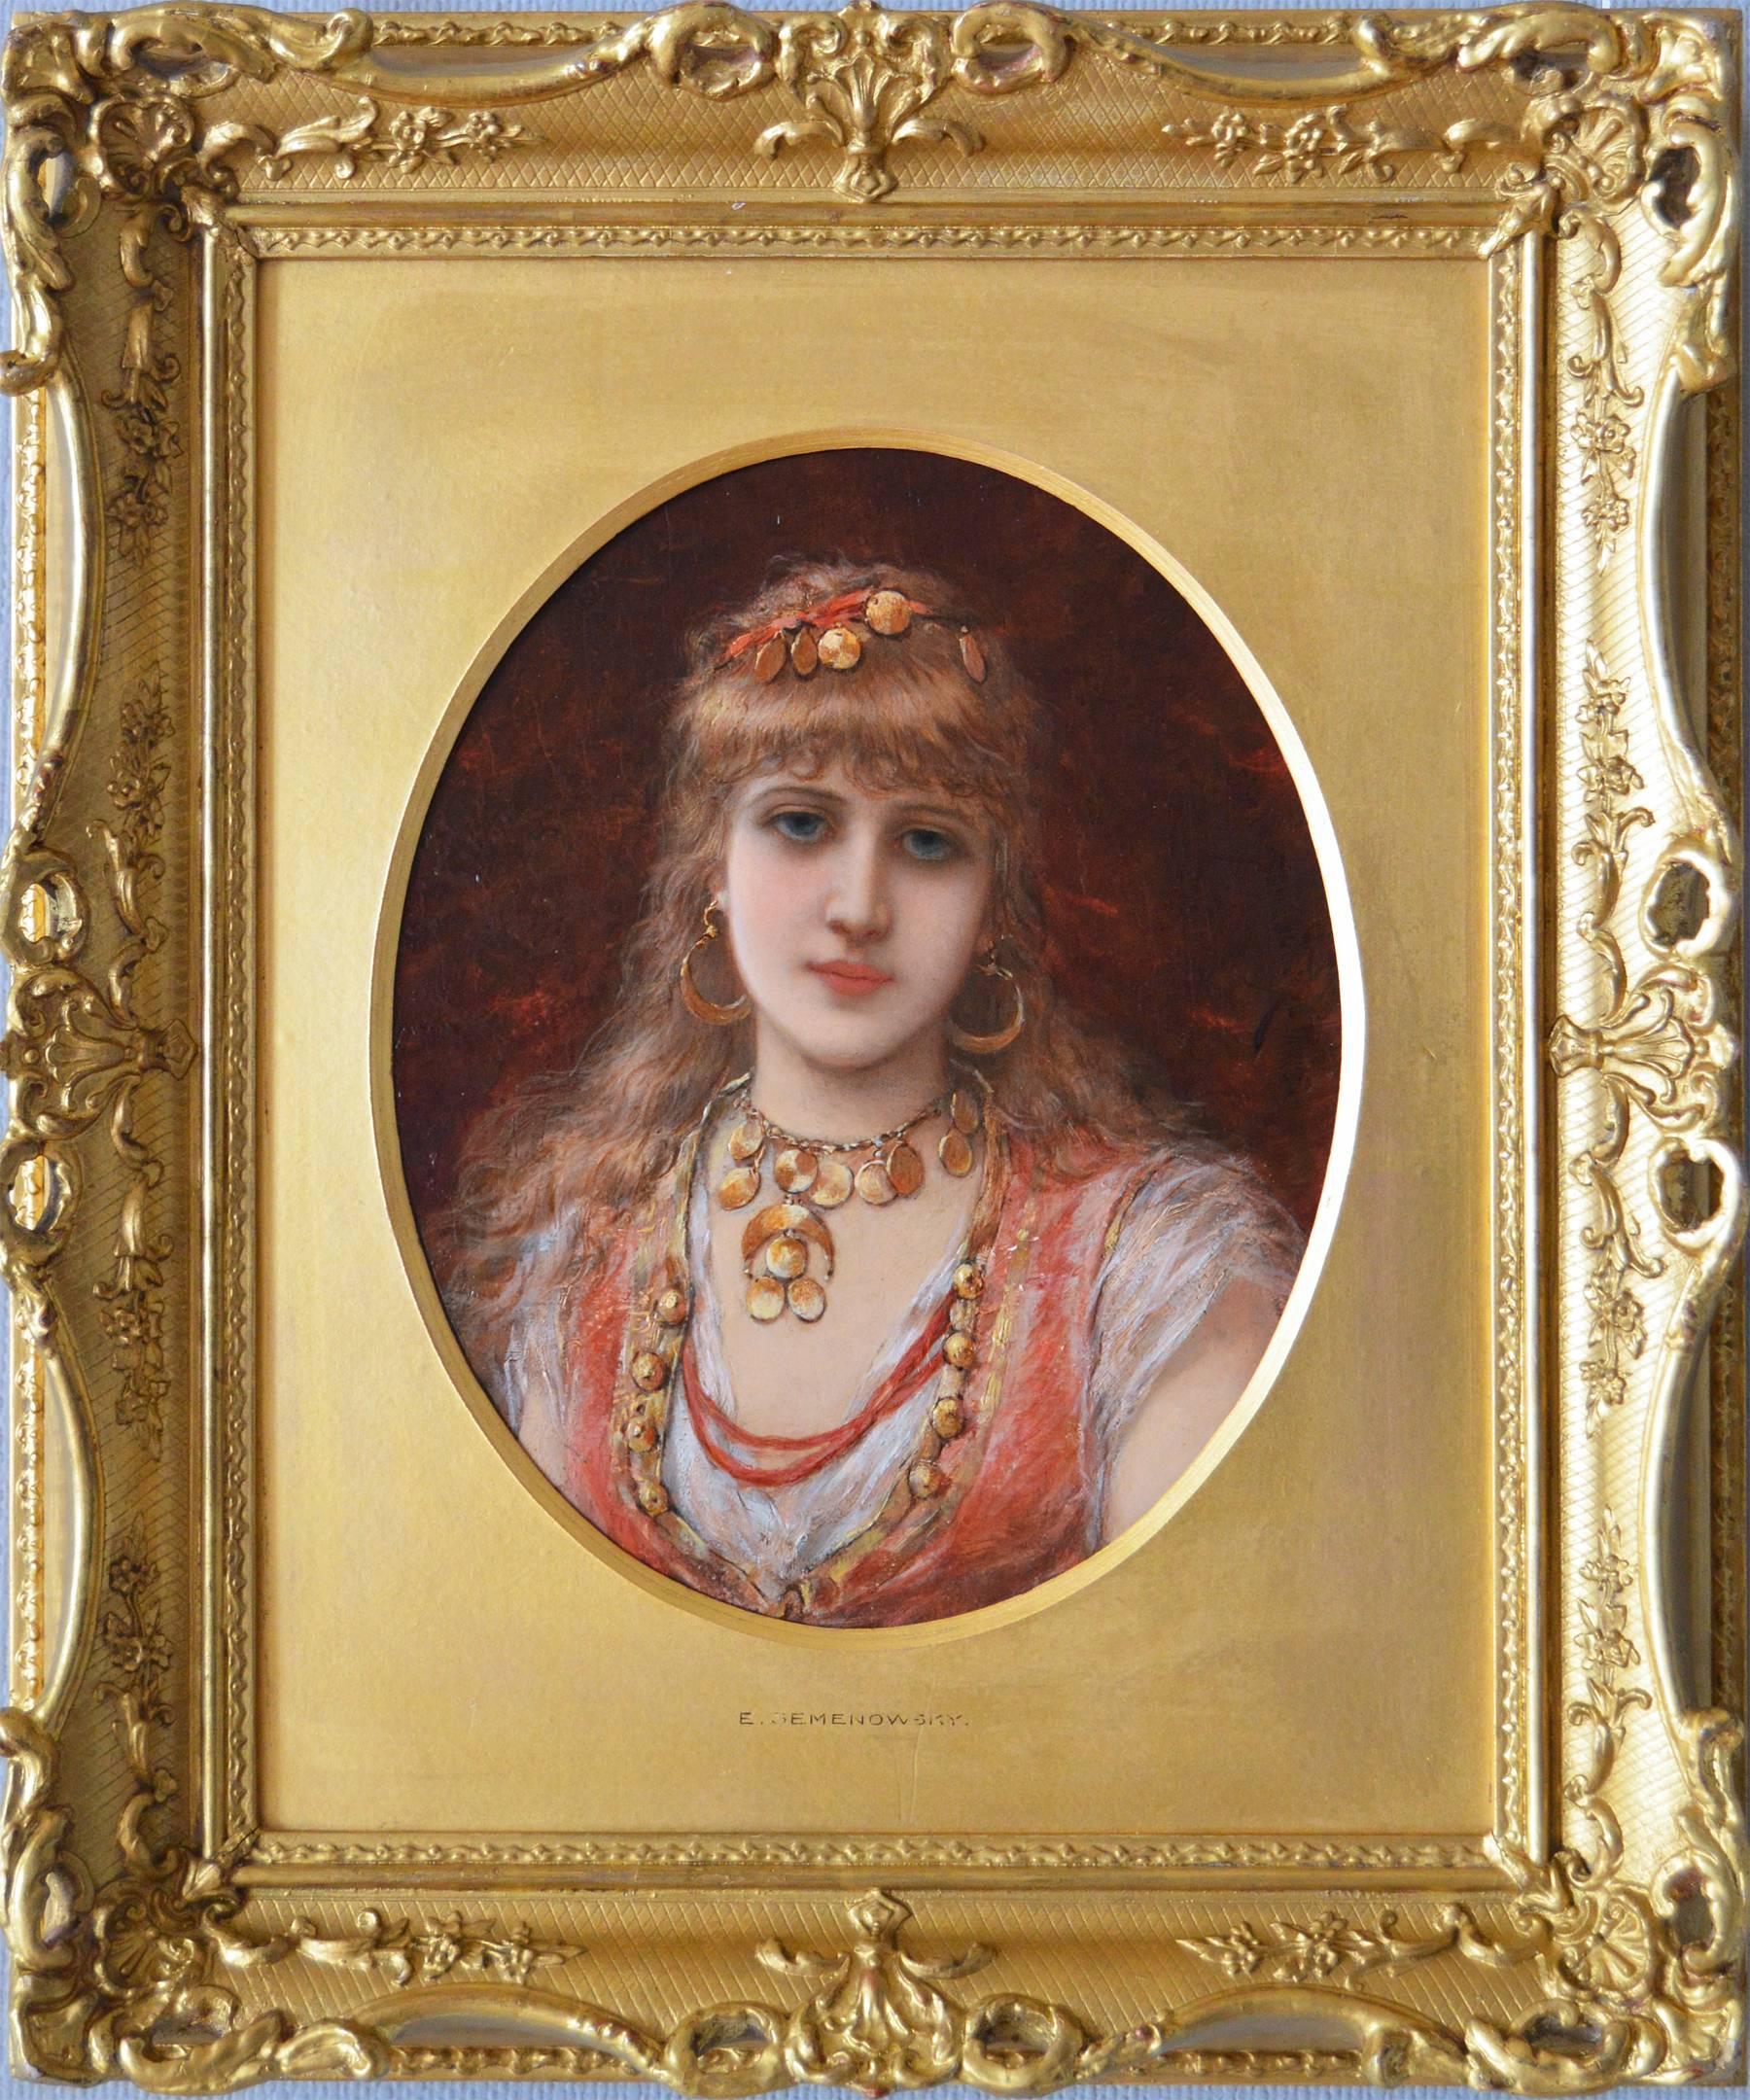 Émile Eisman-Semenowsky Portrait Painting - 19th Century portrait oil painting of young woman